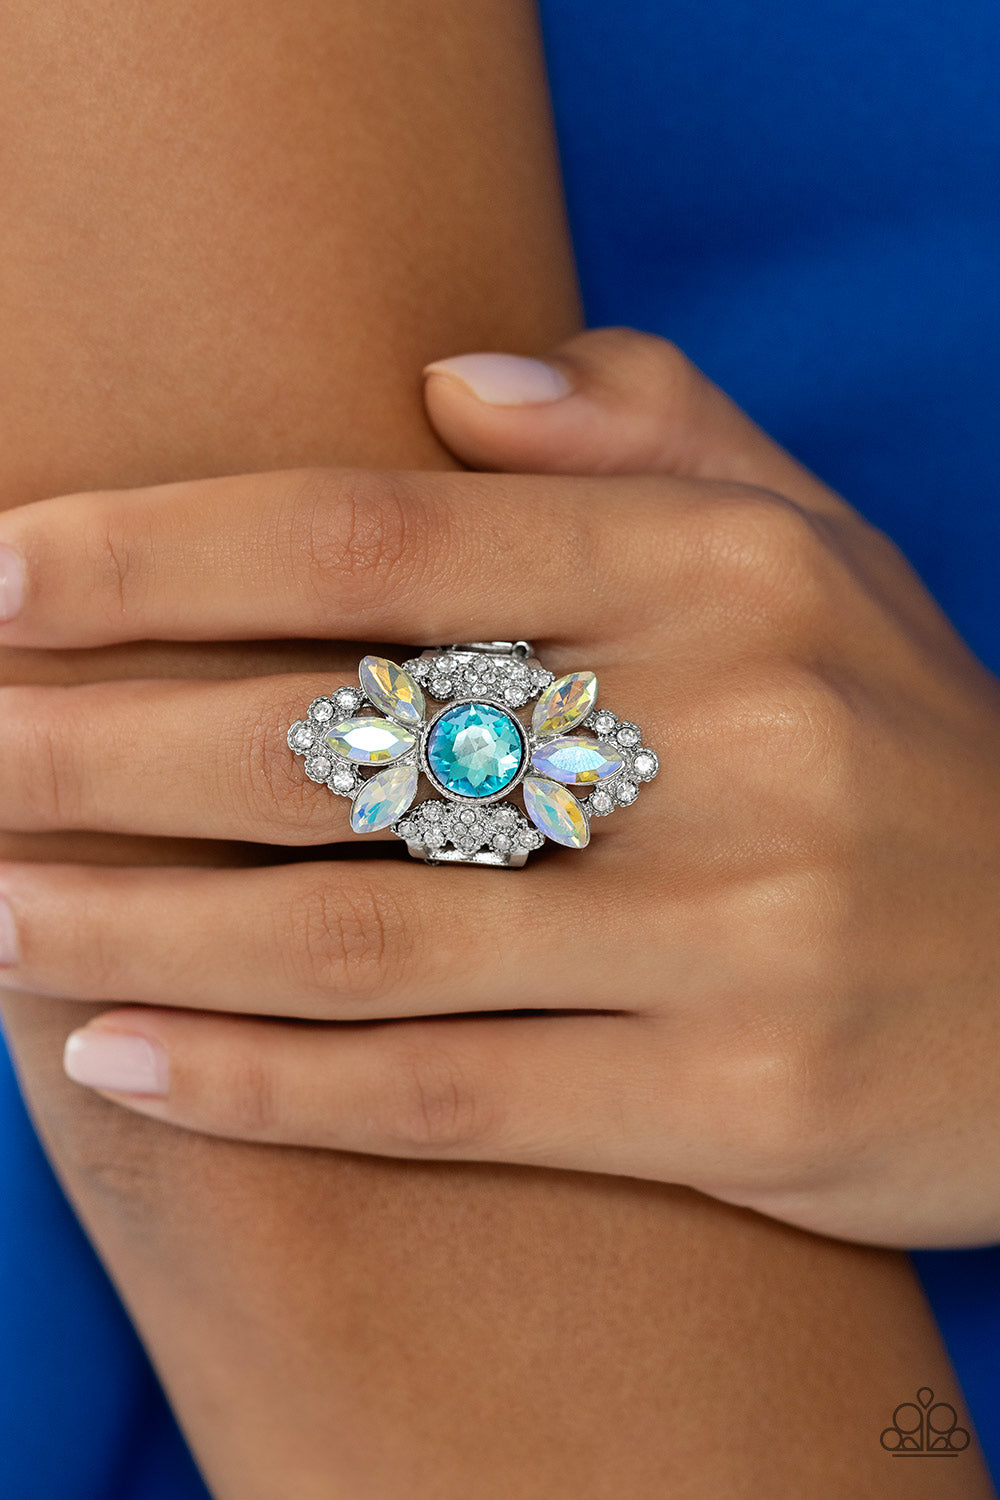 GLISTEN Here! - Blue, White, & Iridescent Rhinestone Paparazzi Ring